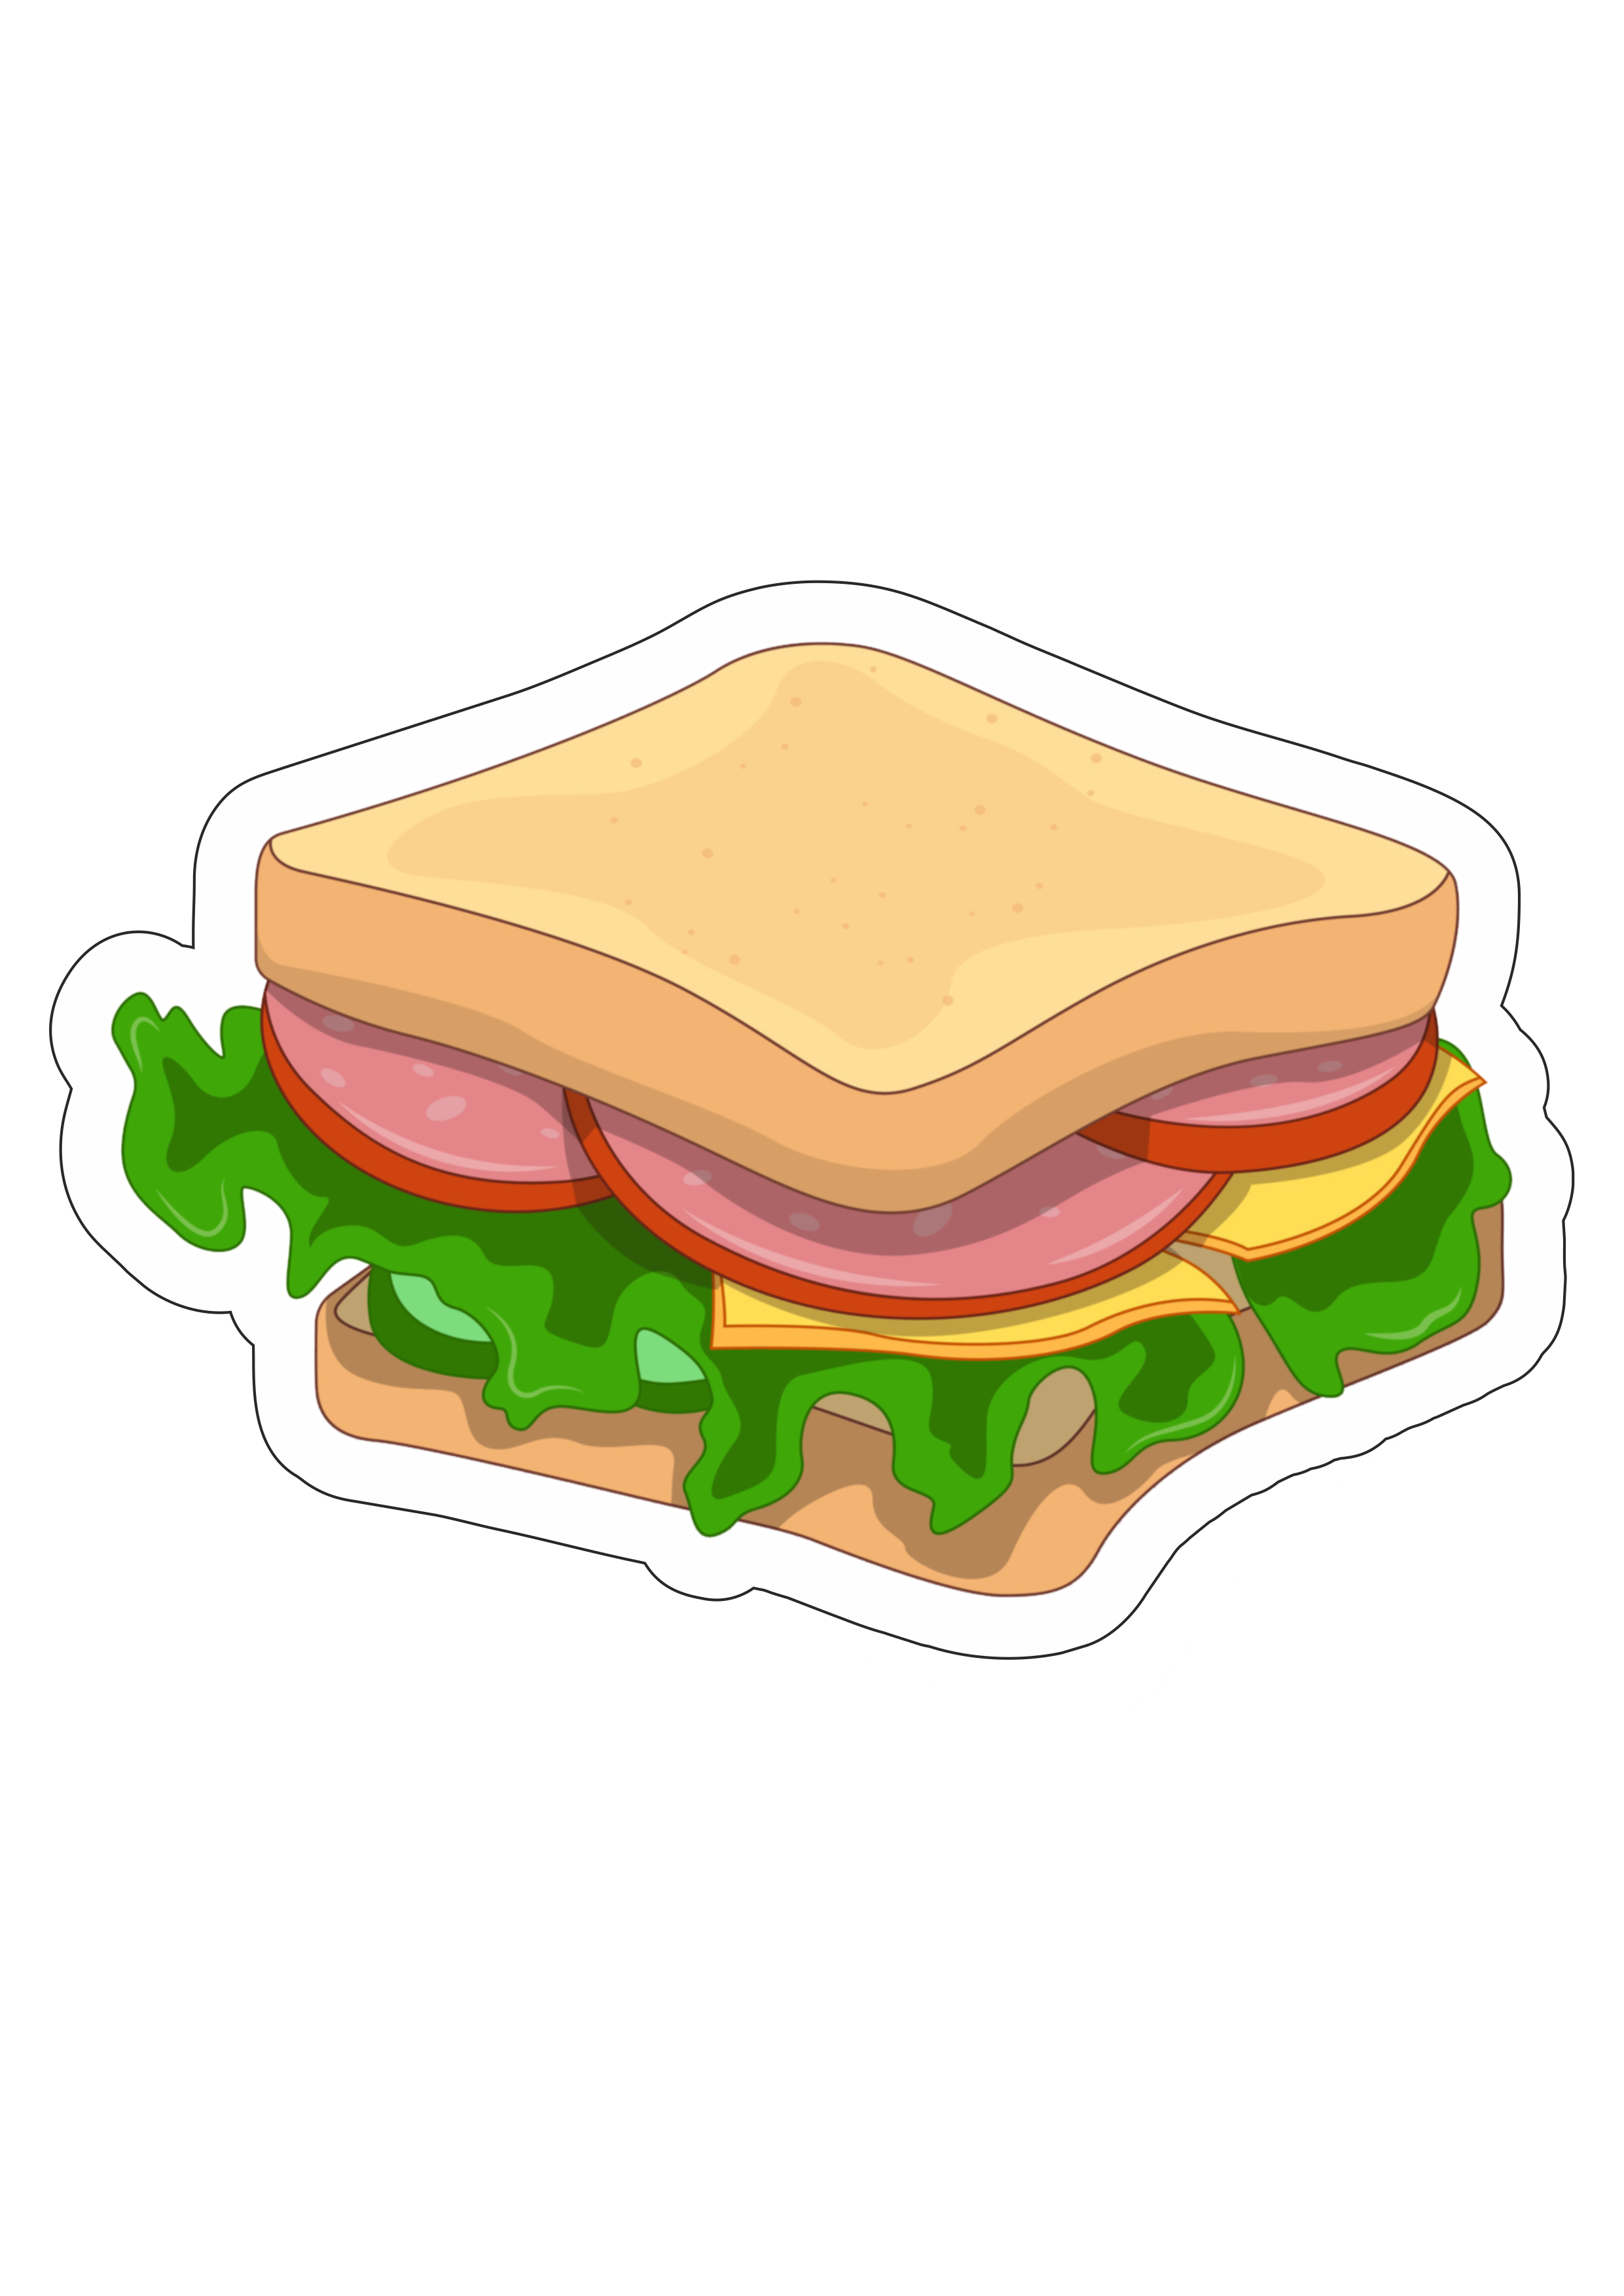 Chaves em desenho sanduiche de presunto ilustração simples imagem sem fundo png